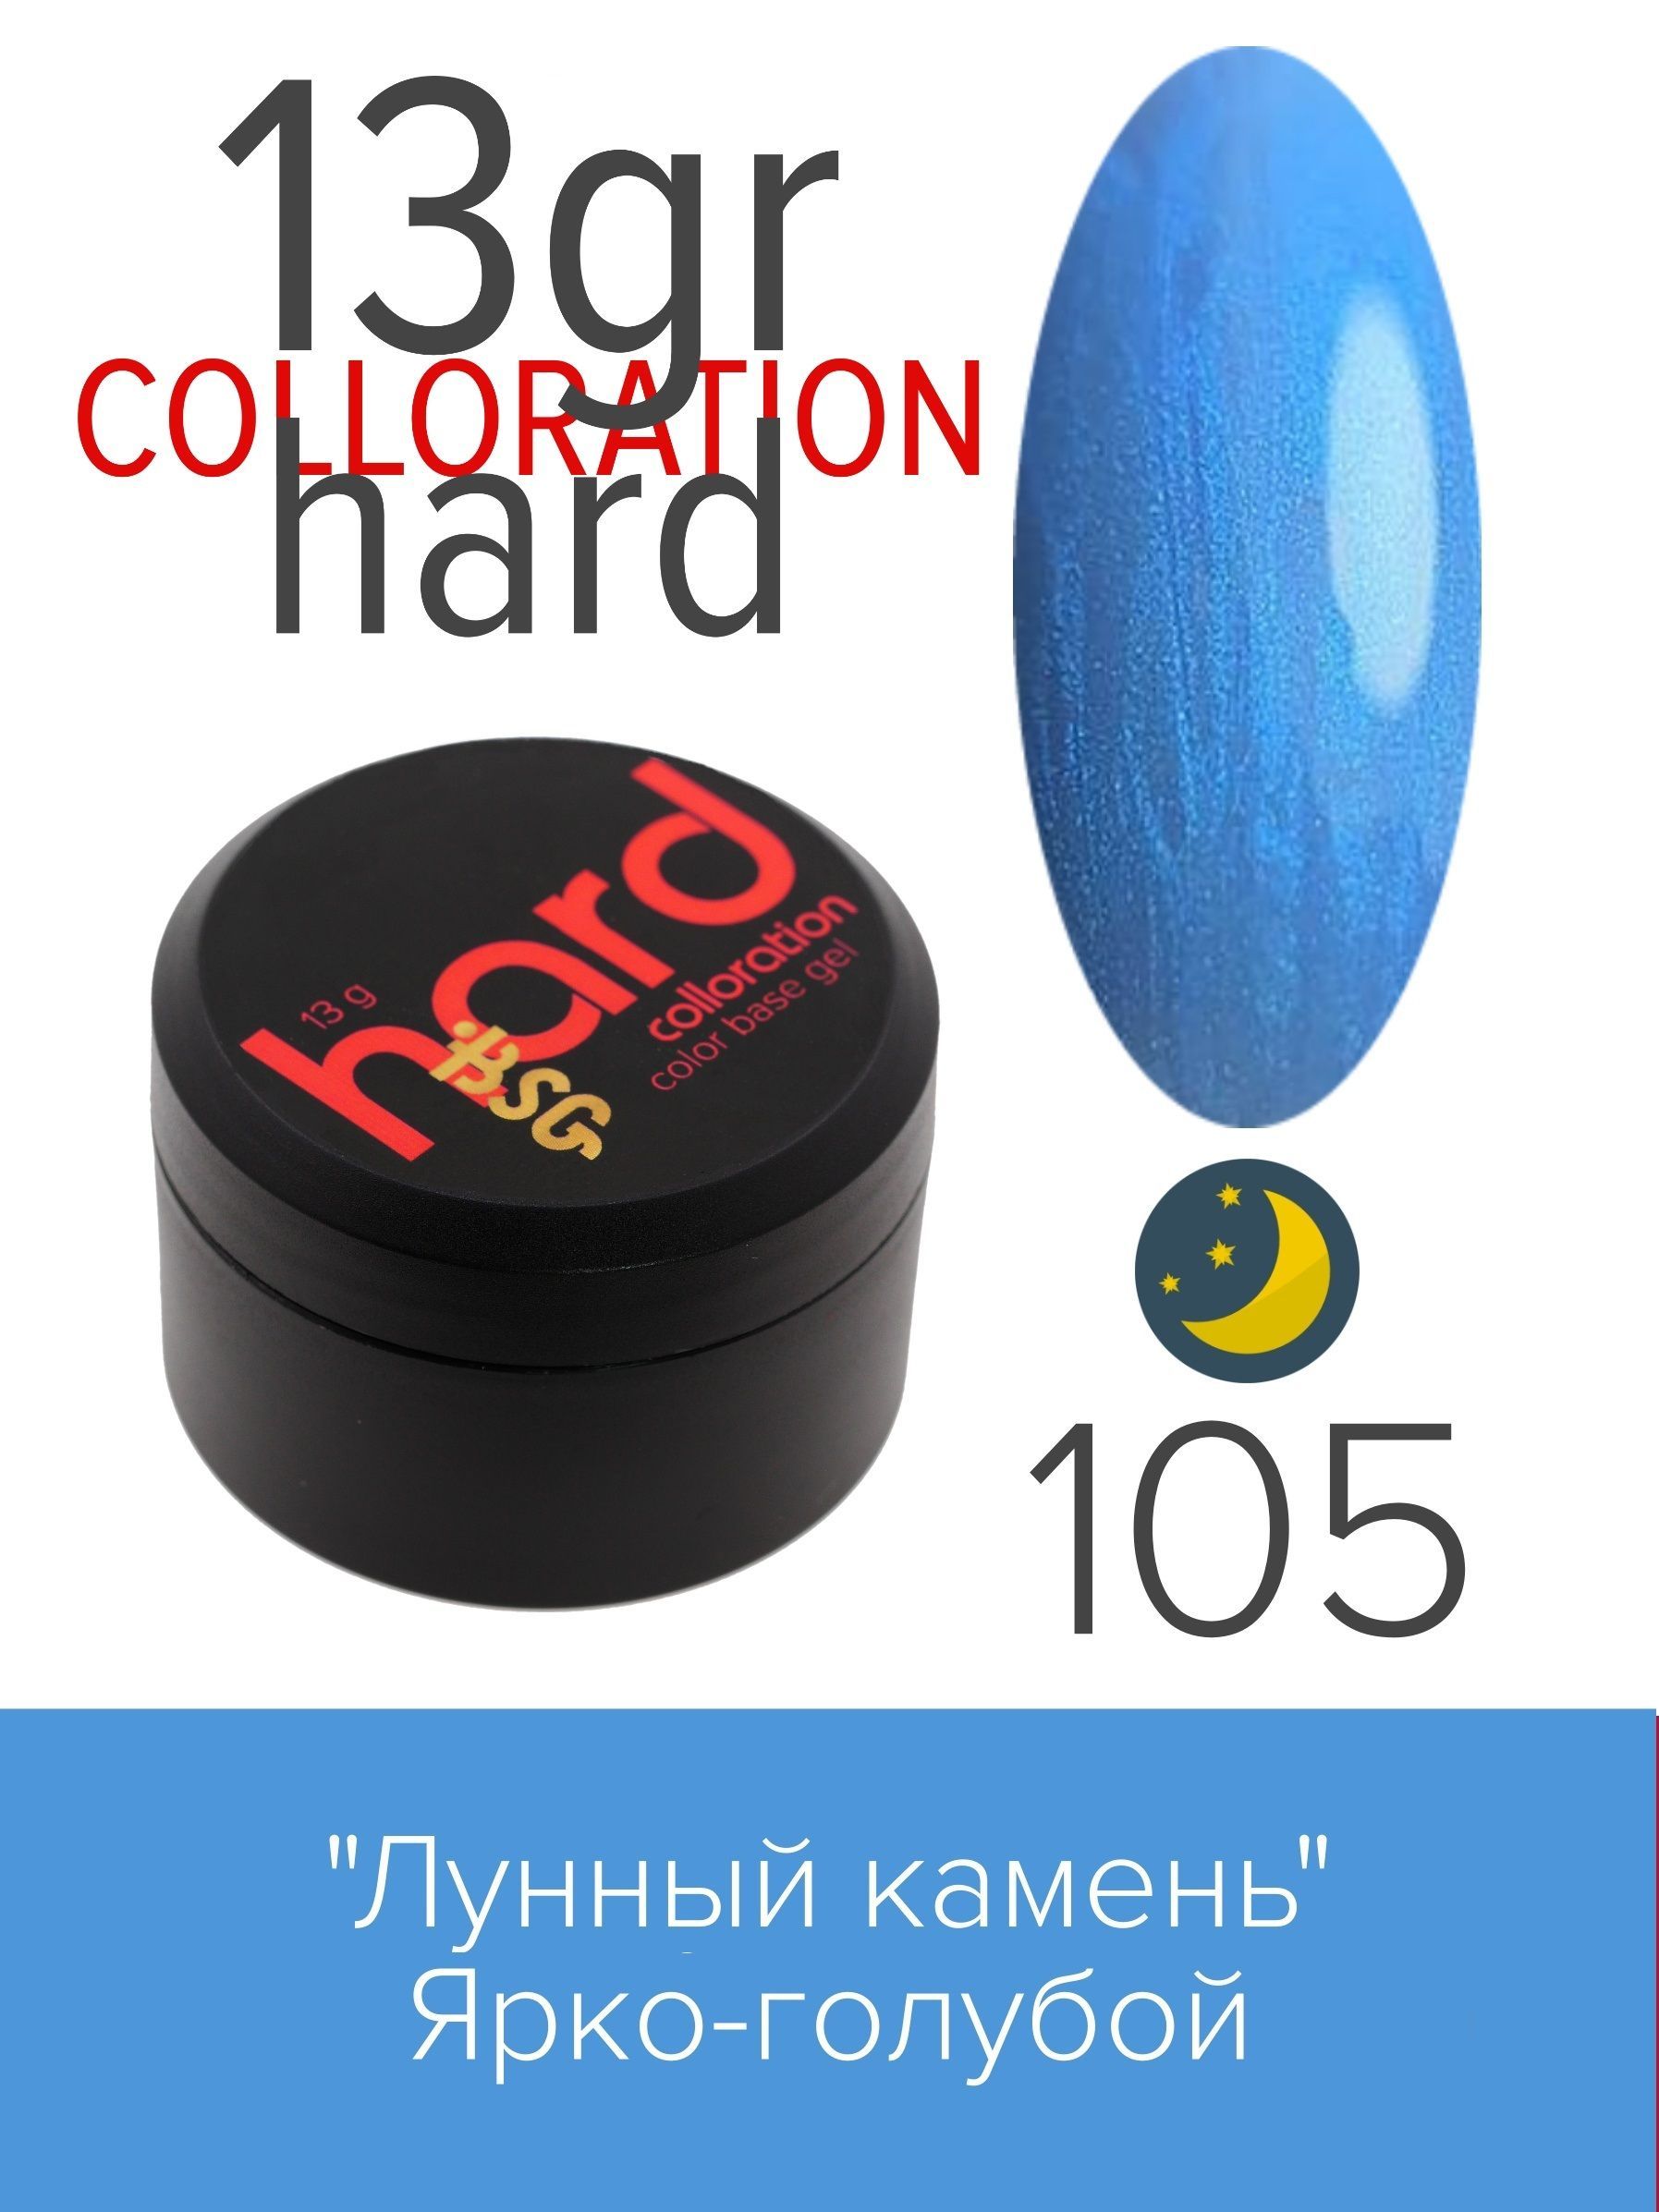 База BSG Colloration Hard цветная жесткая №105 лунный волк стихи